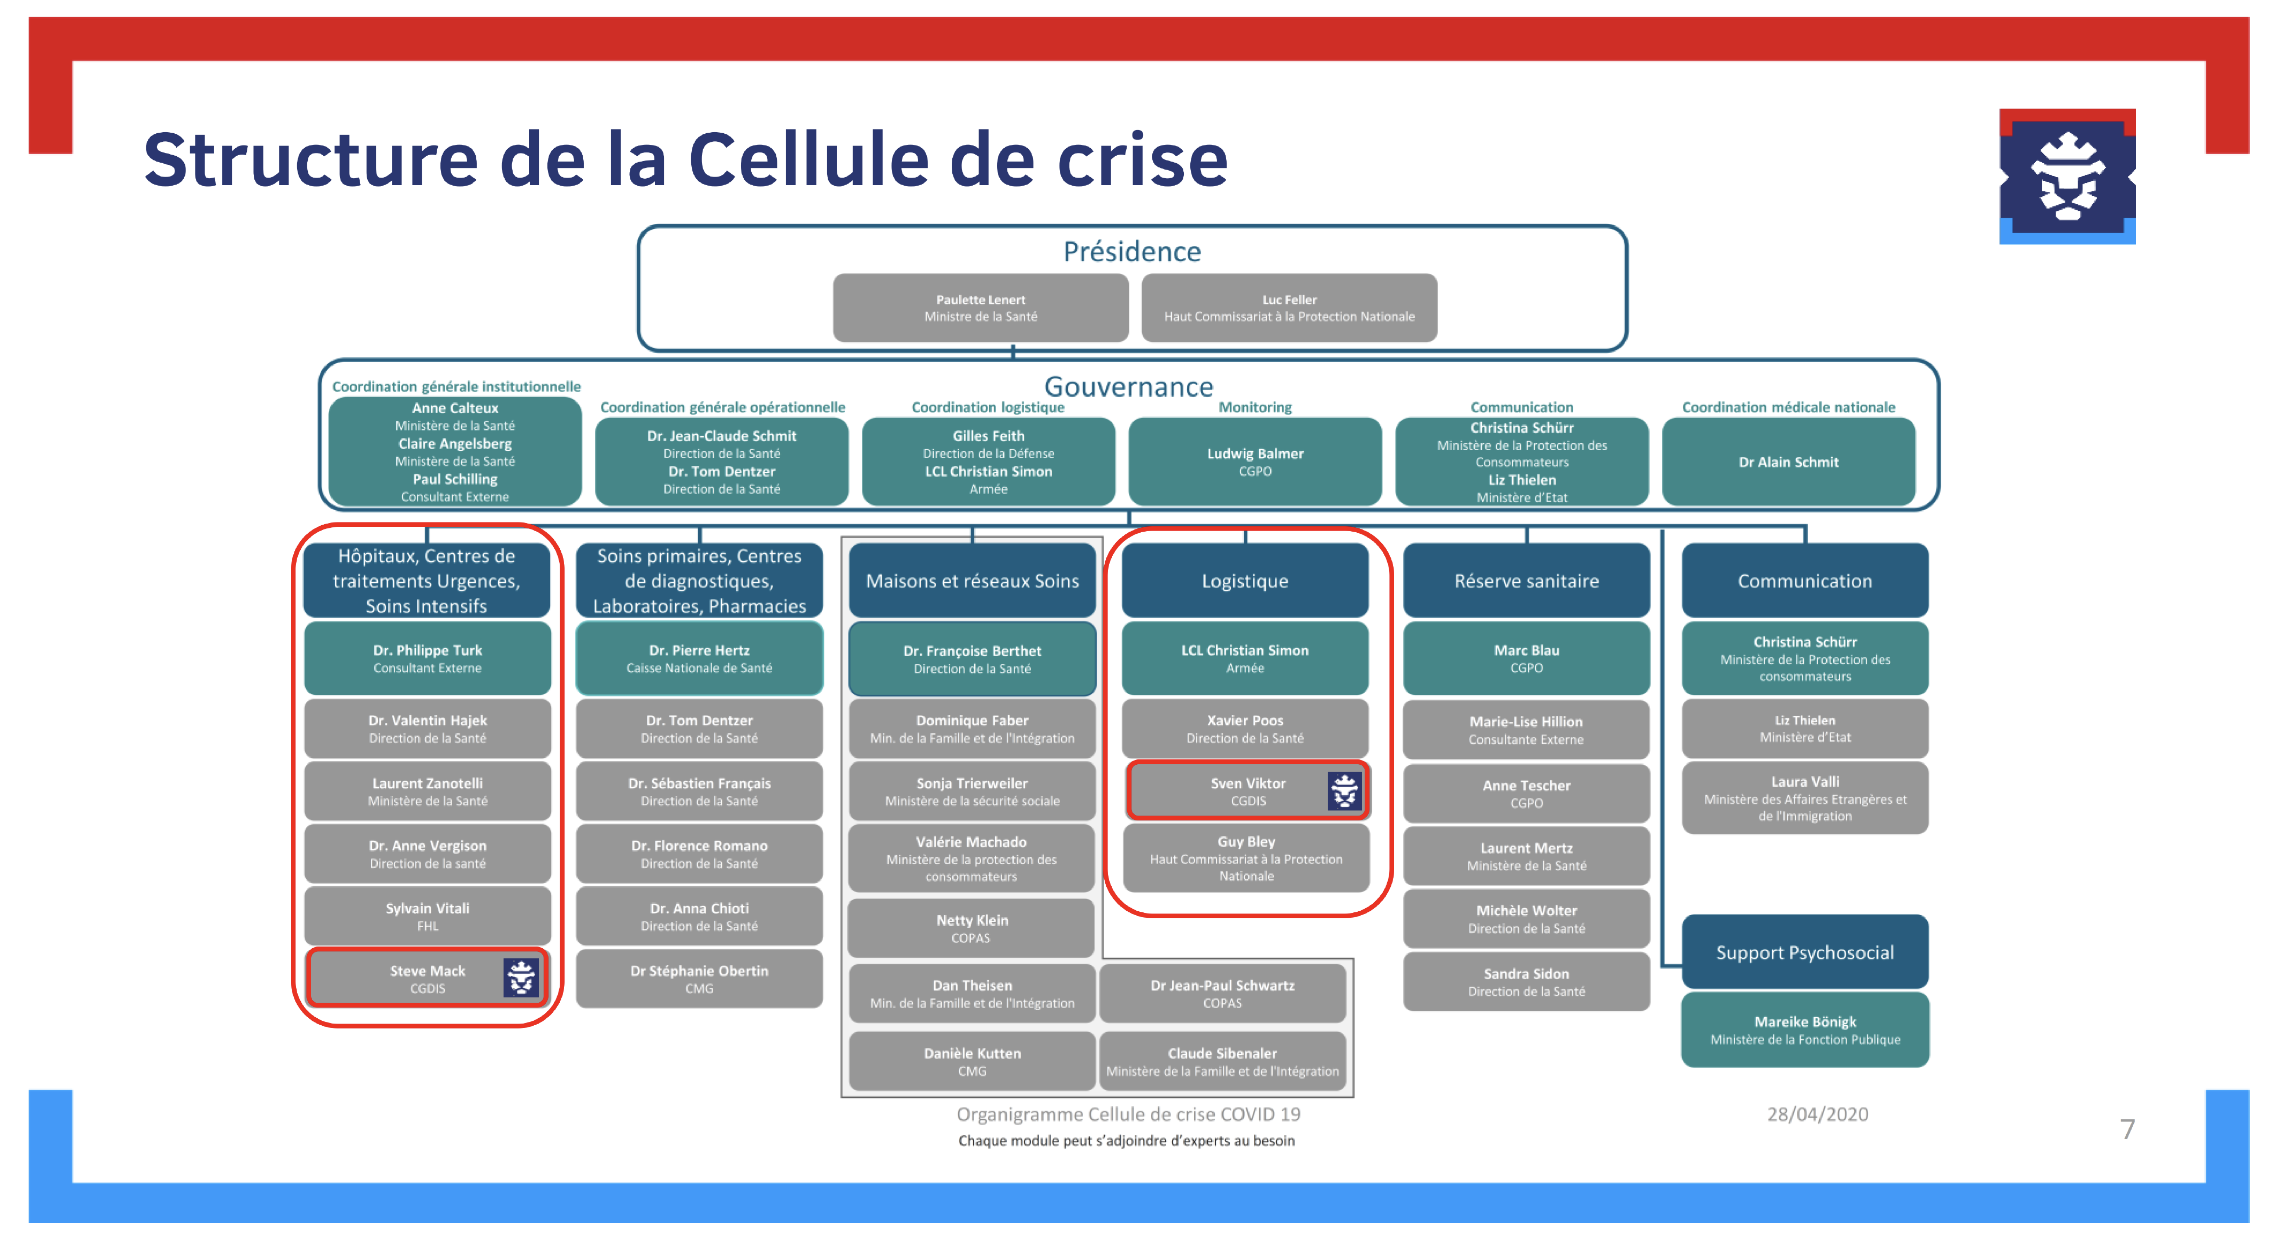 Figure 7. Structure de la cellule de crise gouvernementale. Source : HCPN